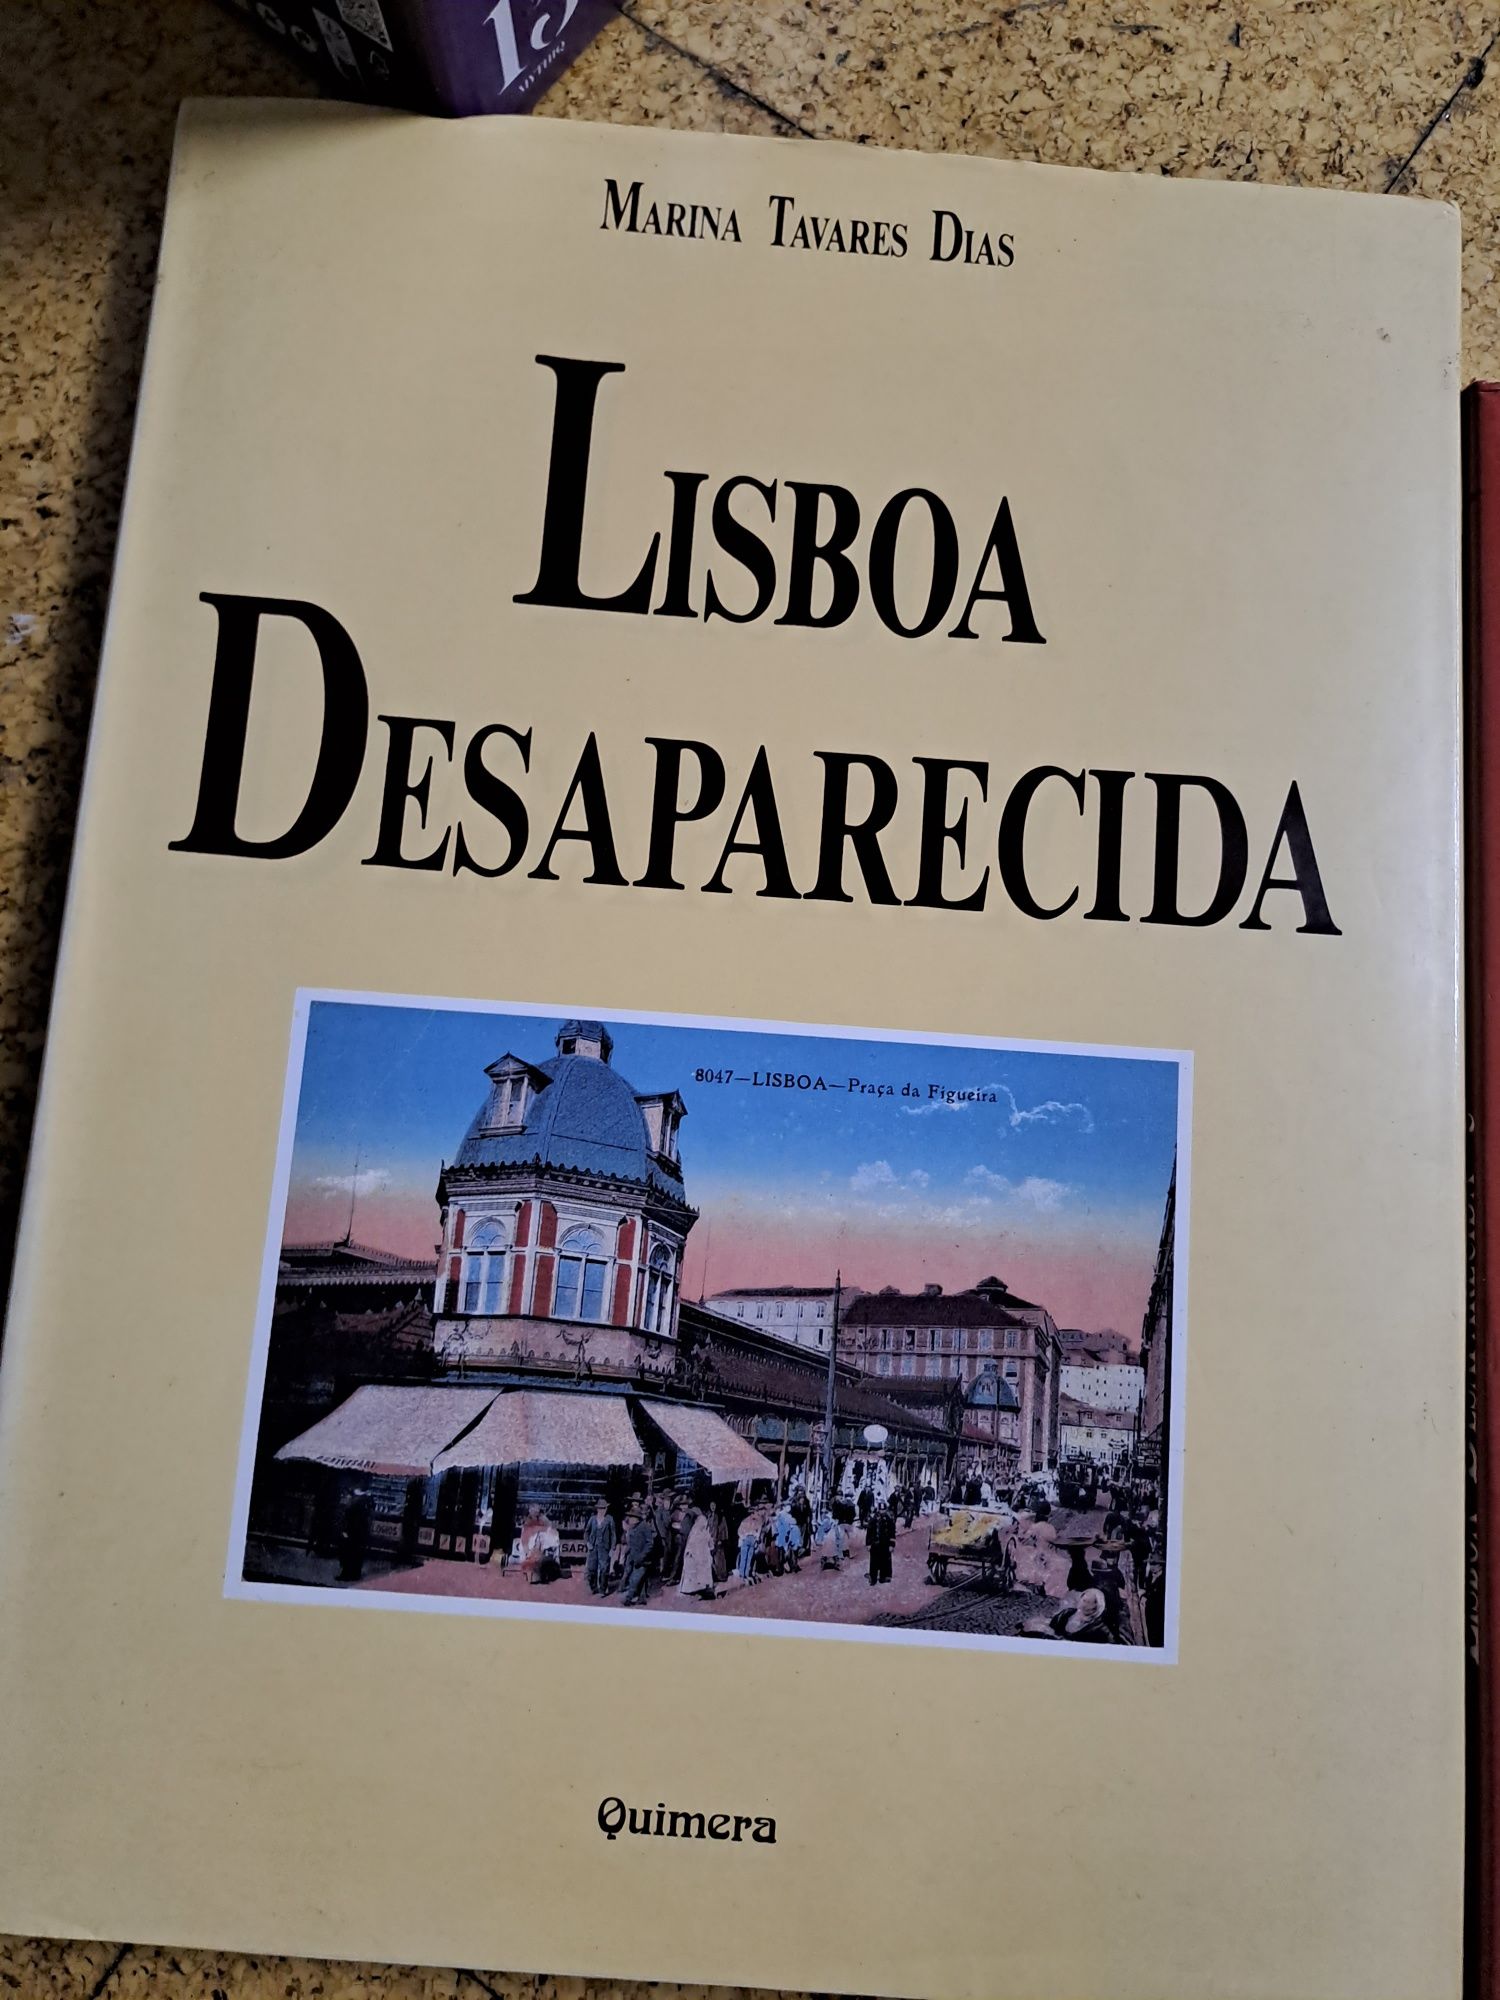 Lisboa desaparecida